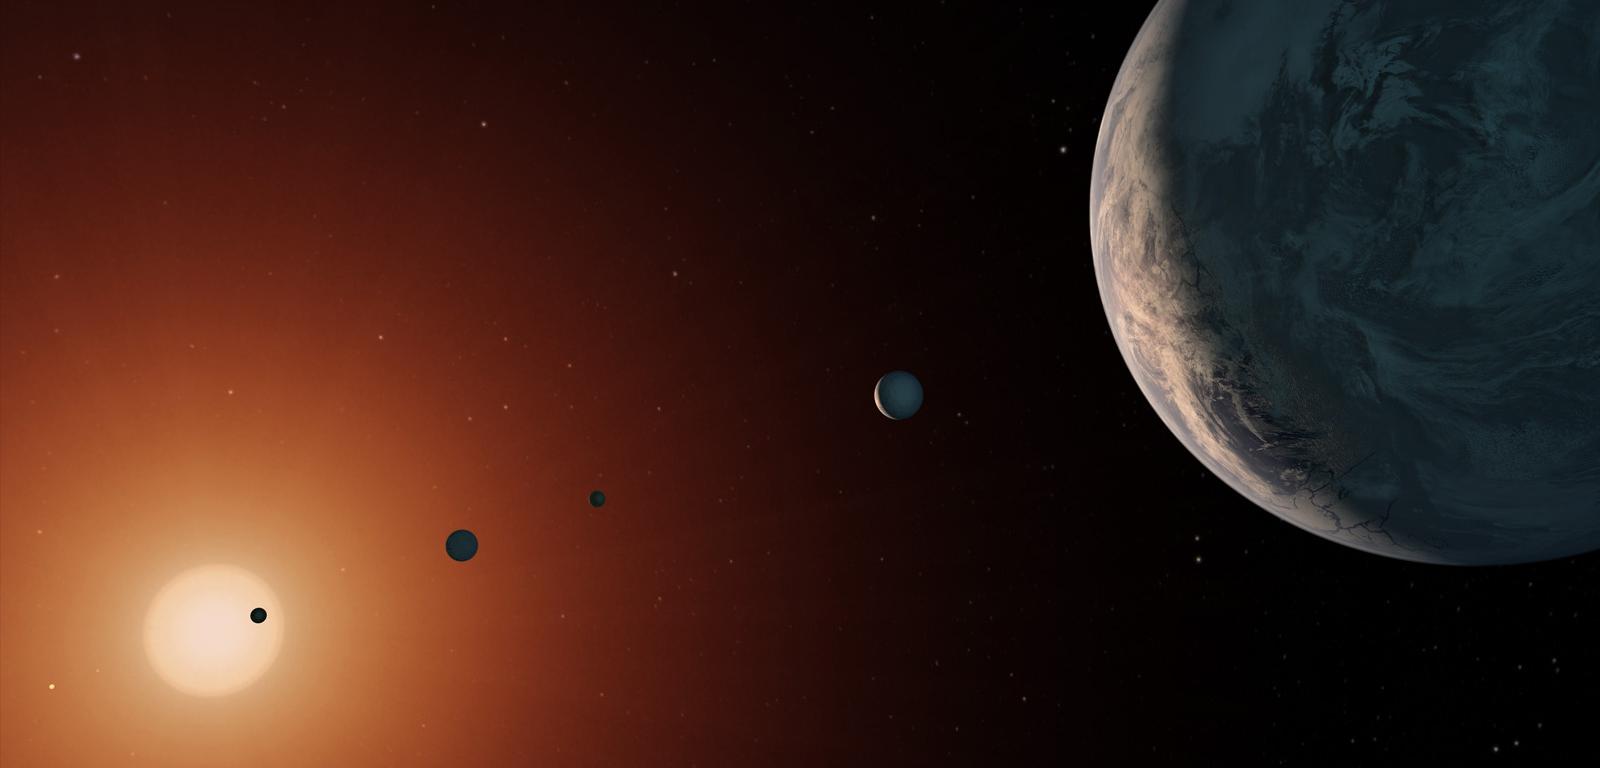 Tak mógłby wyglądać system TRAPPIST-1 z punktu obserwacyjnego w pobliżu planety TRAPPIST-1f (po prawej).